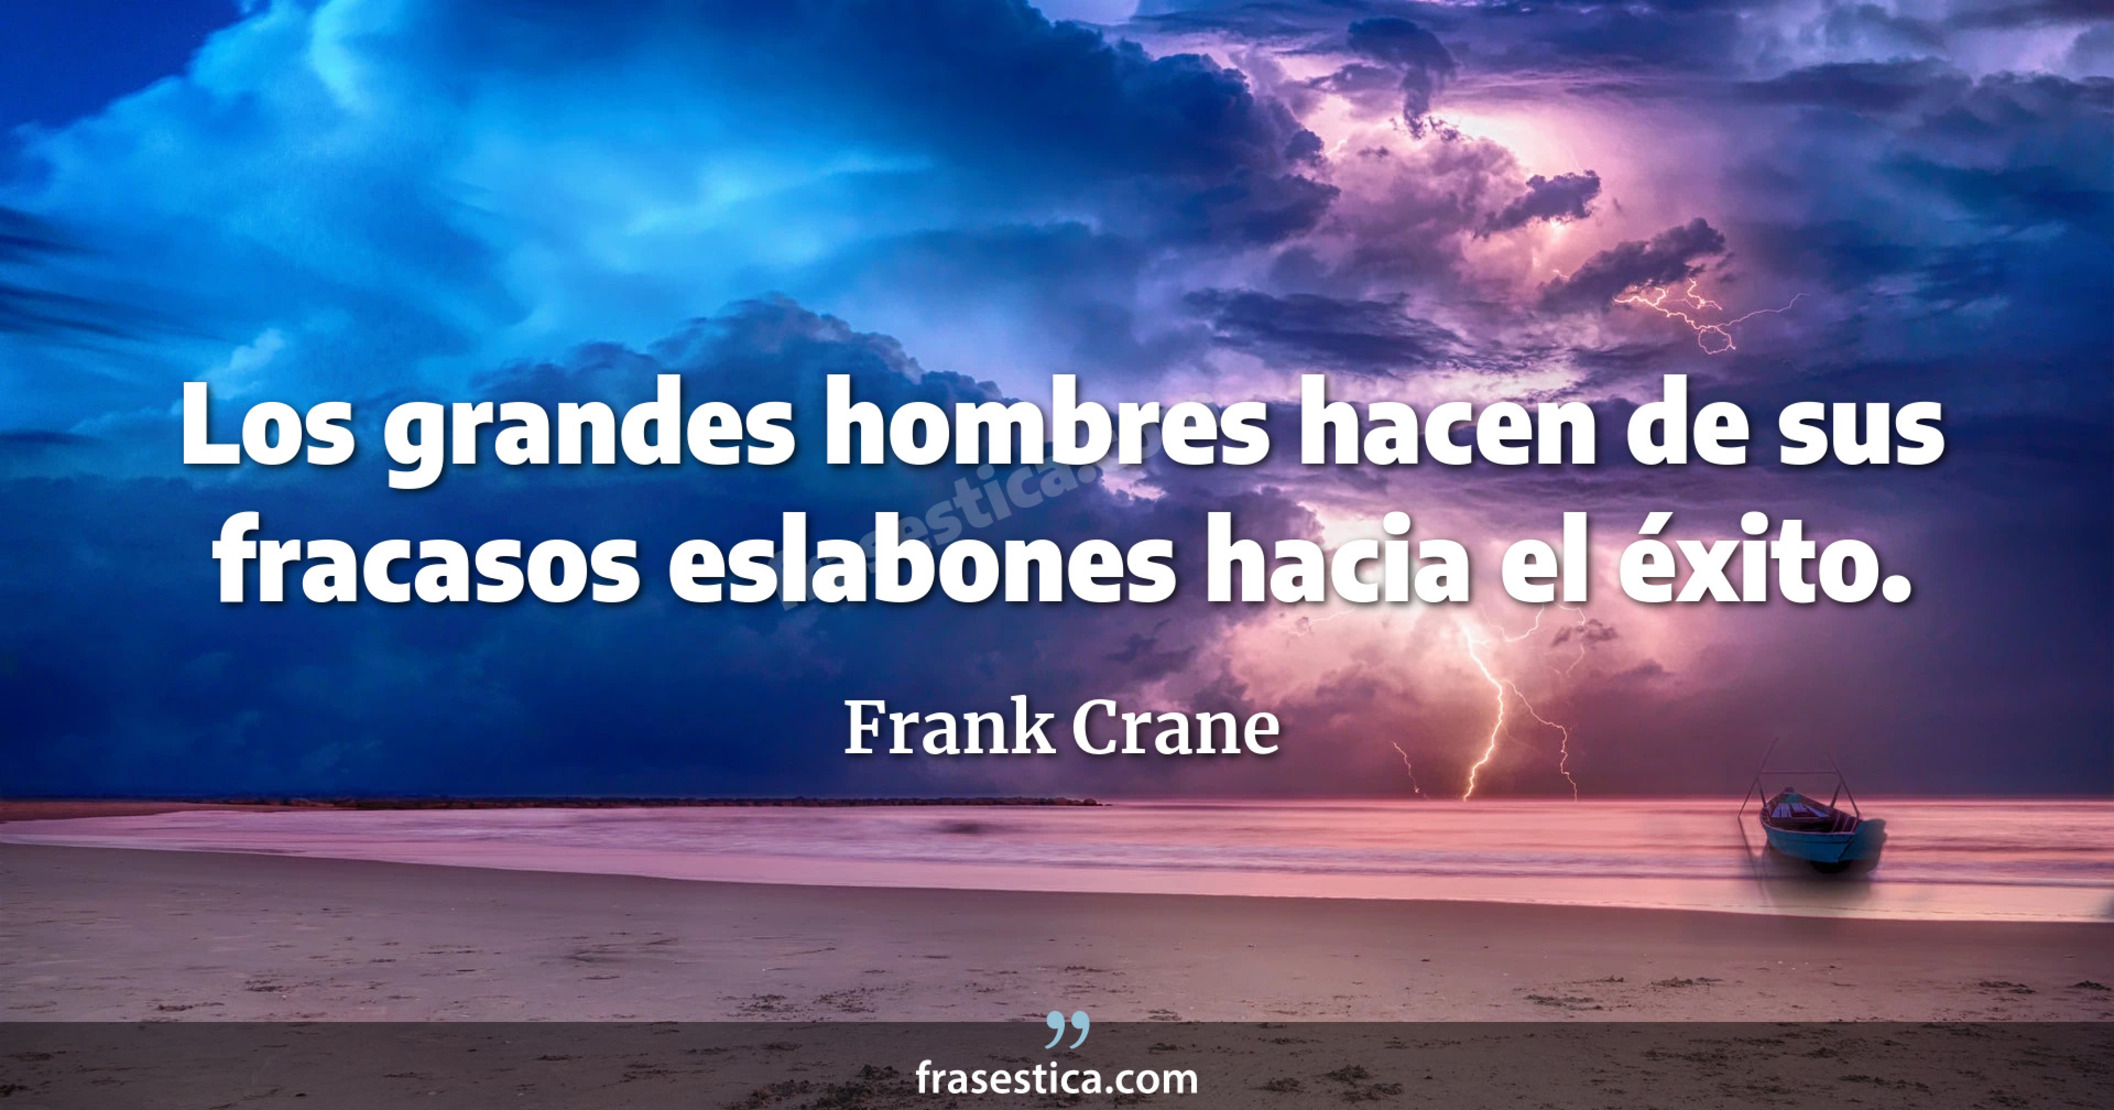 Los grandes hombres hacen de sus fracasos eslabones hacia el éxito. - Frank Crane